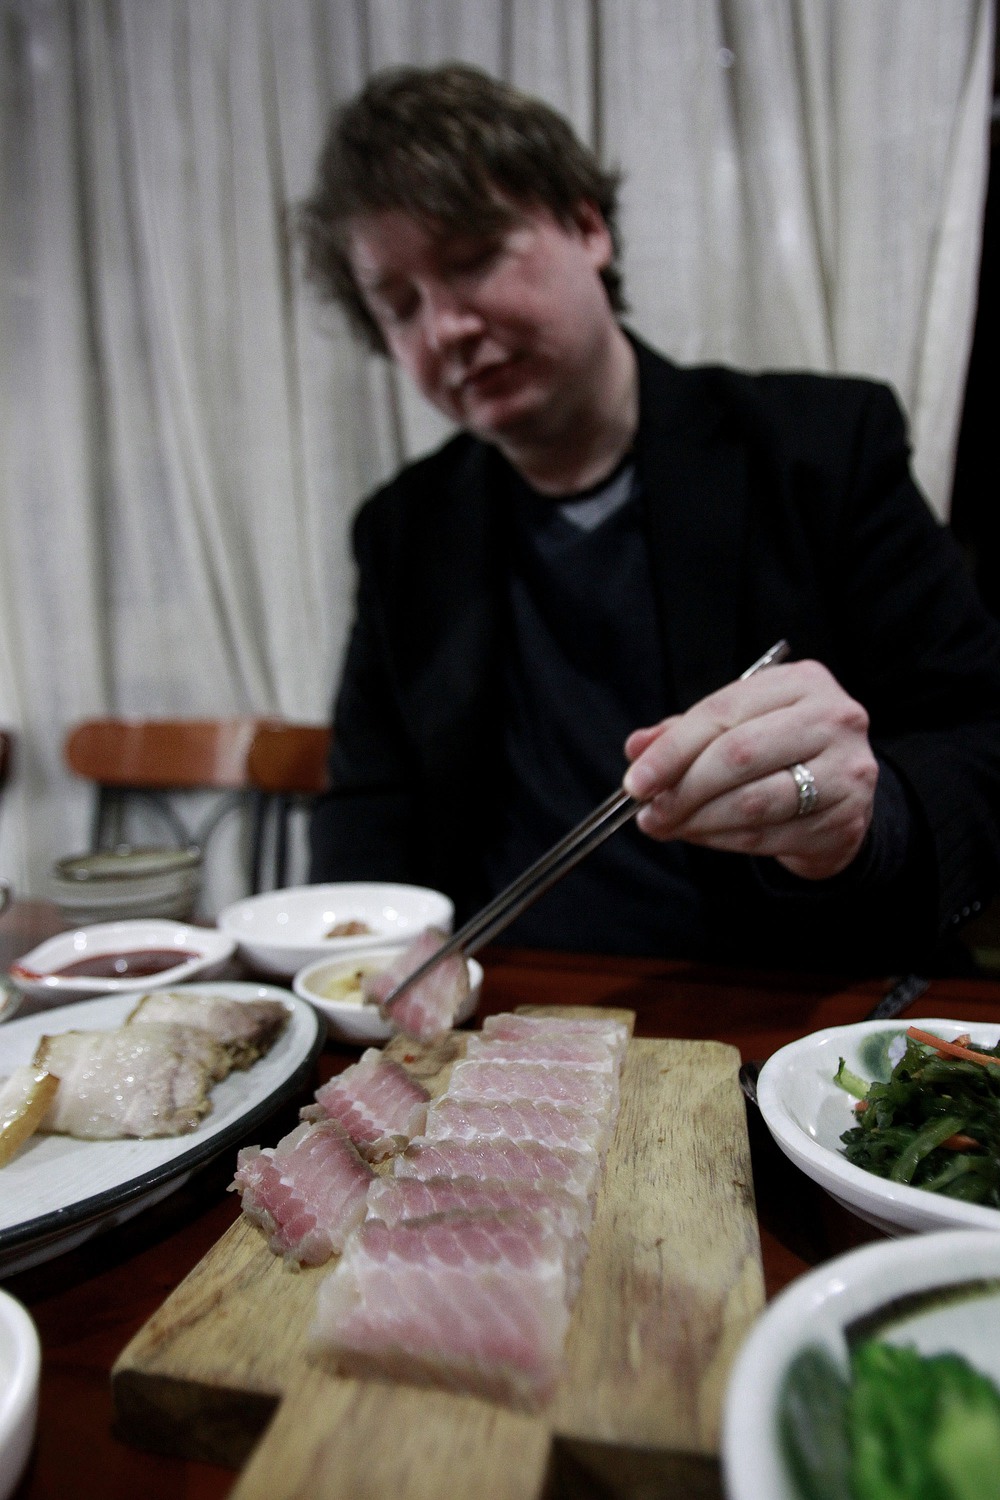 Món ăn được mệnh danh là kinh dị nhất Hàn Quốc: Người ăn nhận xét có mùi như toilet, phải bịt miệng khi dùng lần đầu - Ảnh 5.